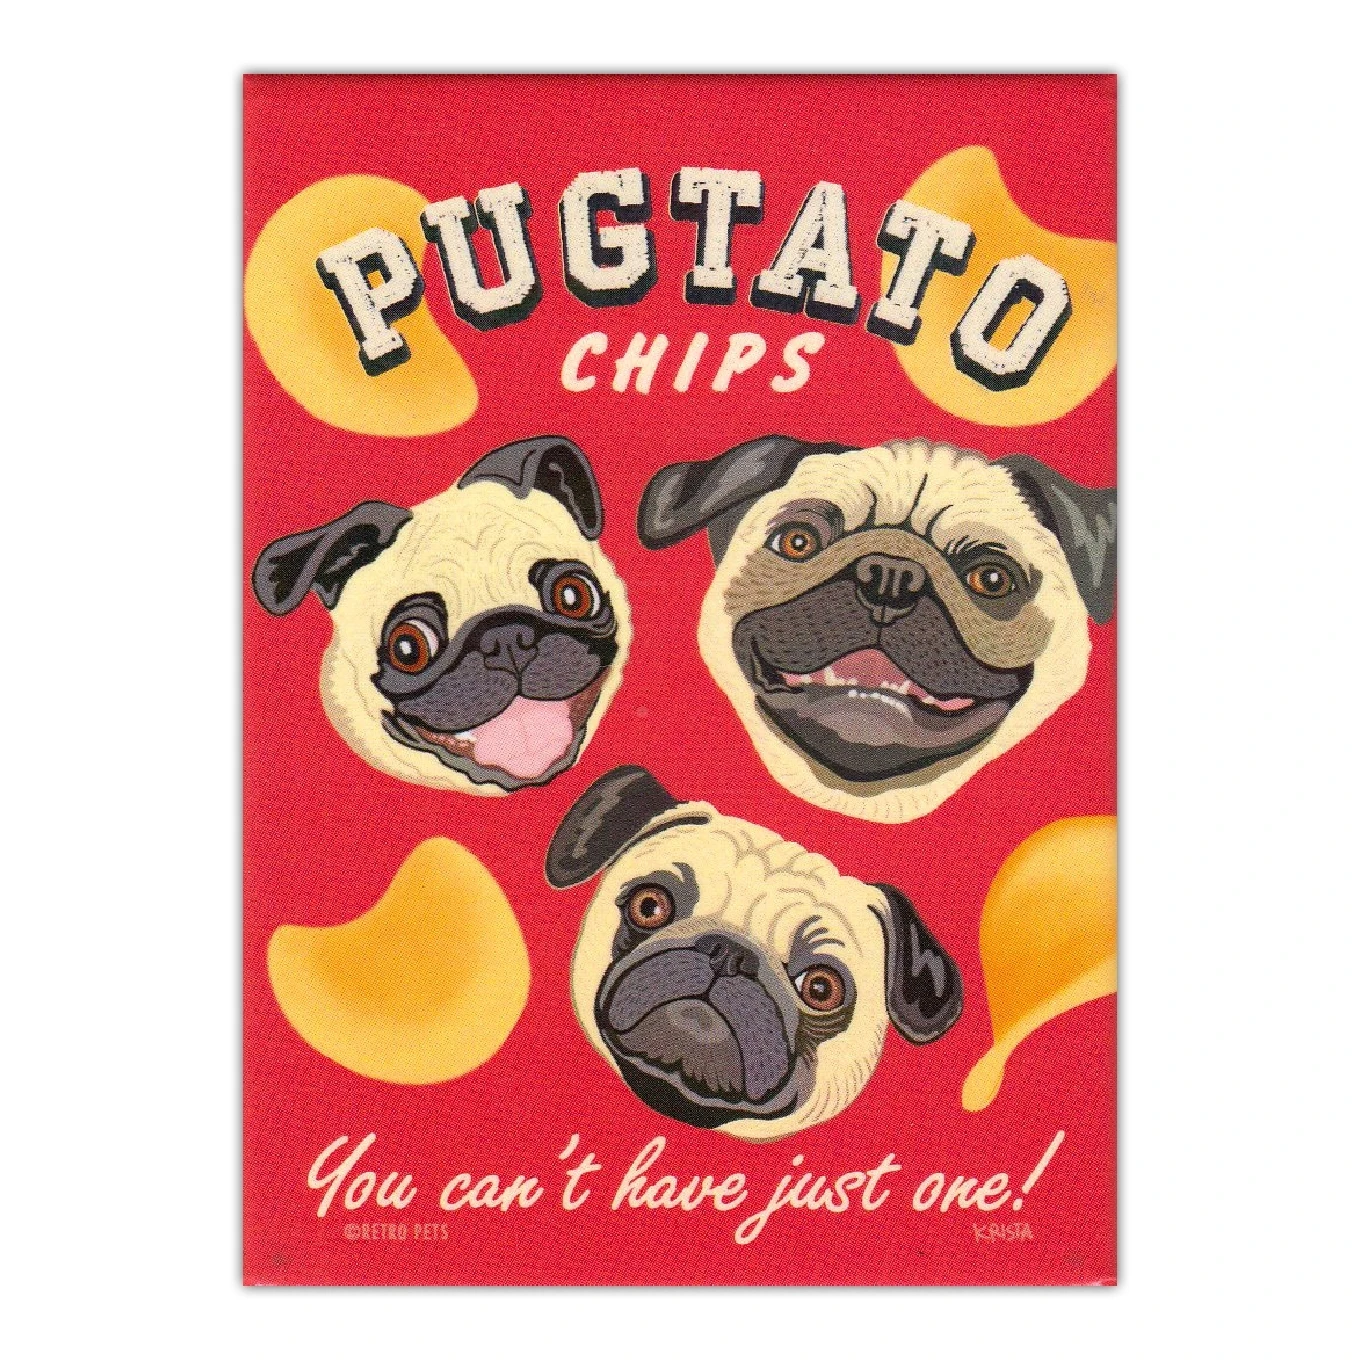 

Магниты на холодильник в стиле ретро для собак-чипы Pugtato (мопса)-винтажное рекламное искусство-2,5x3,5